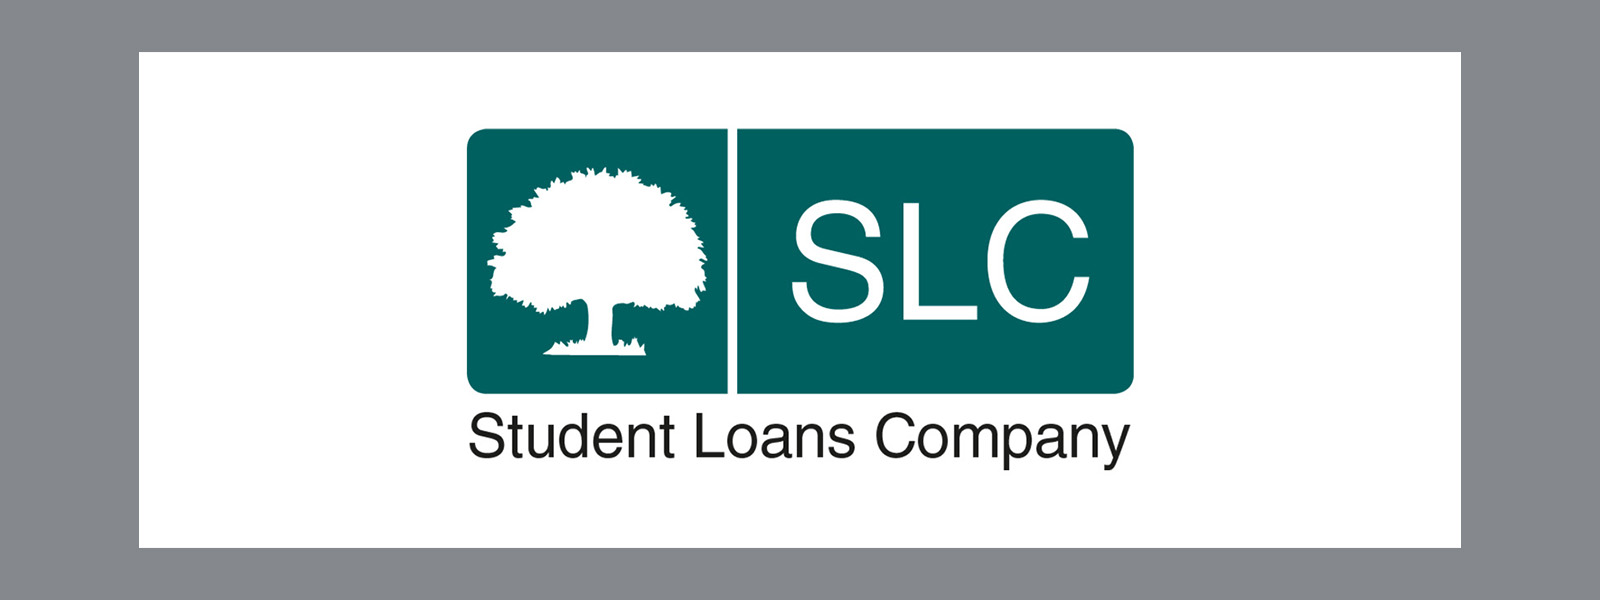 Student Loans Company logo